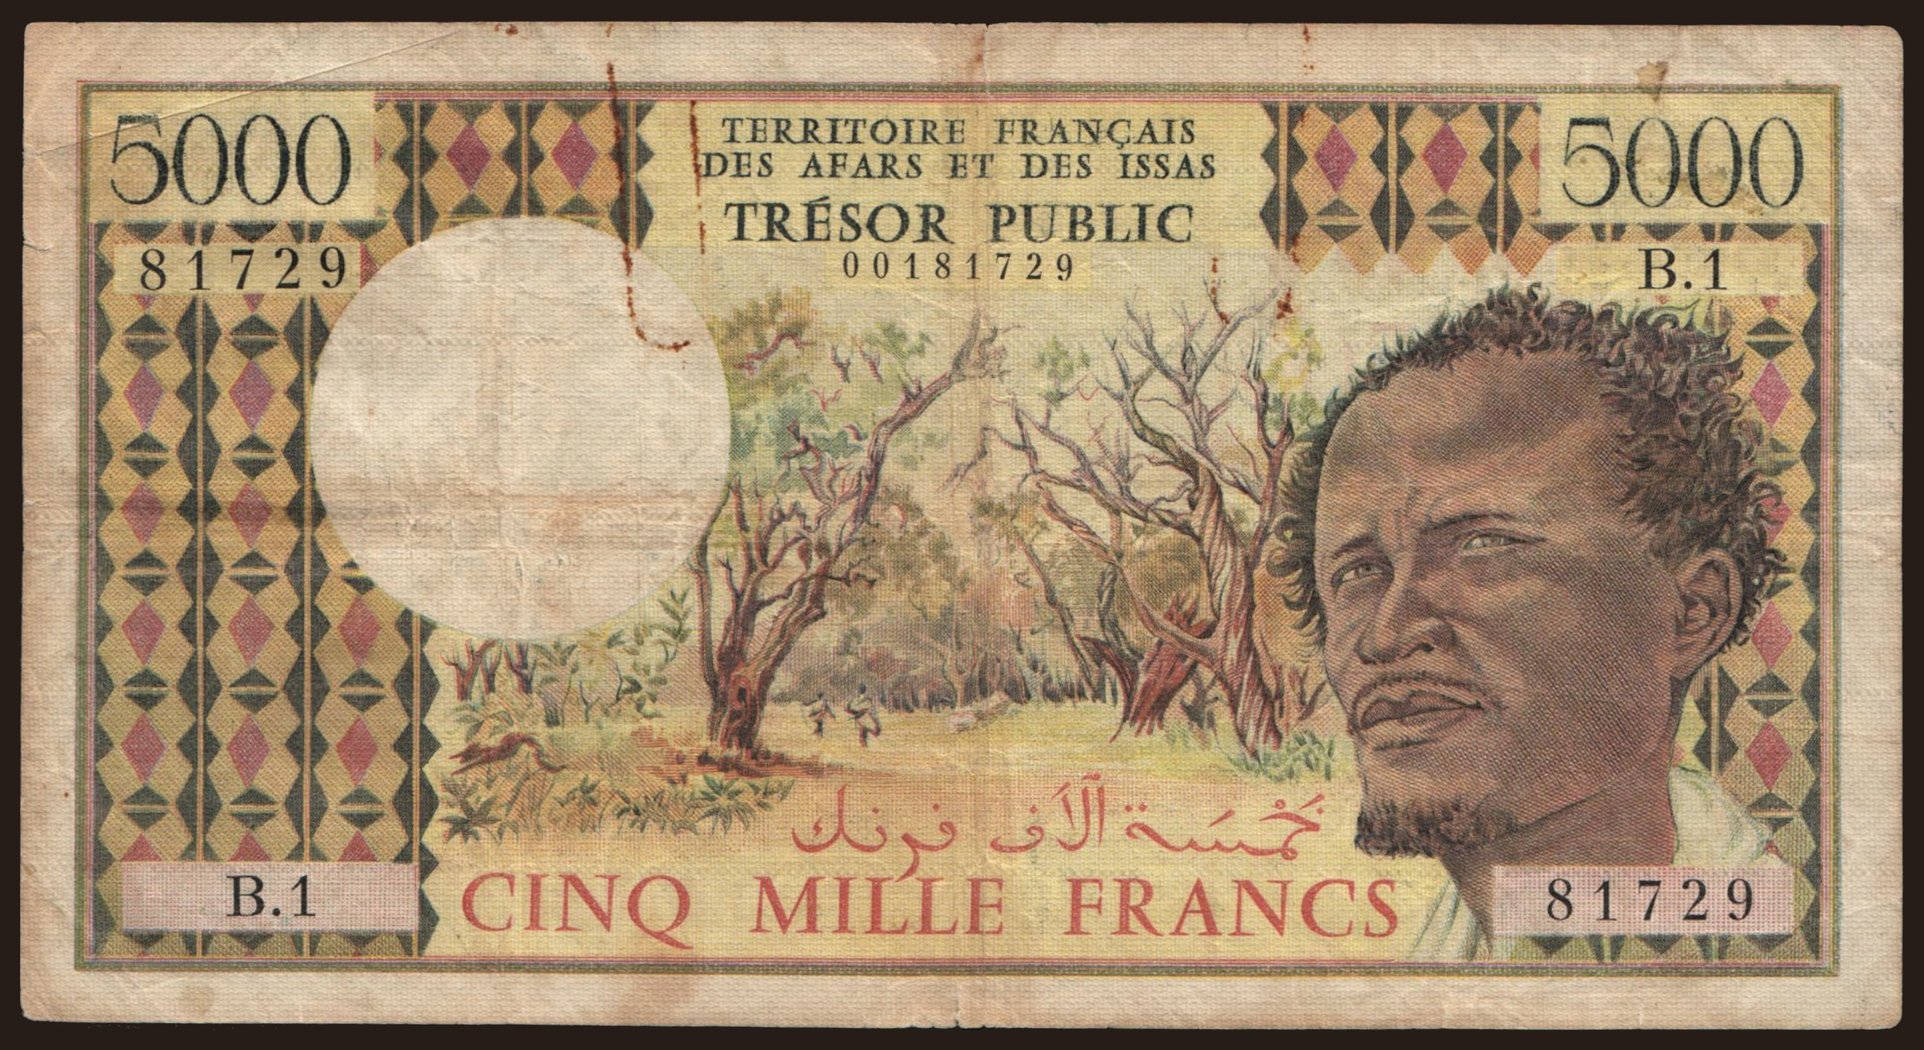 5000 francs, 1975